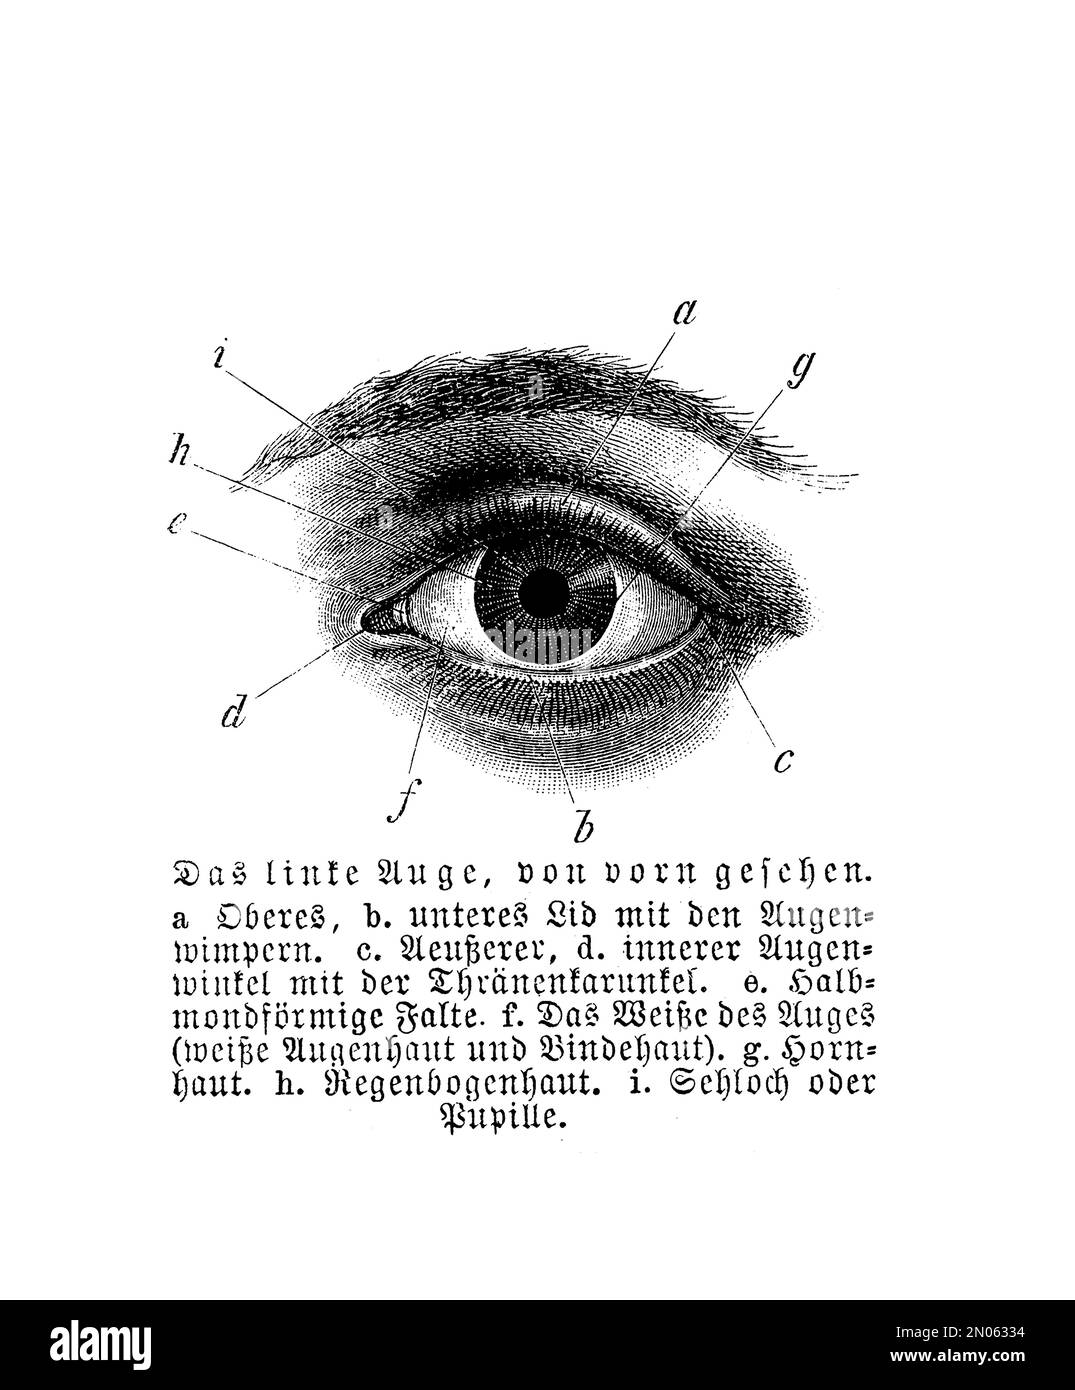 Anatomie - menschliches Auge, Vintage-Gravur mit deutschen Beschreibungen Stockfoto